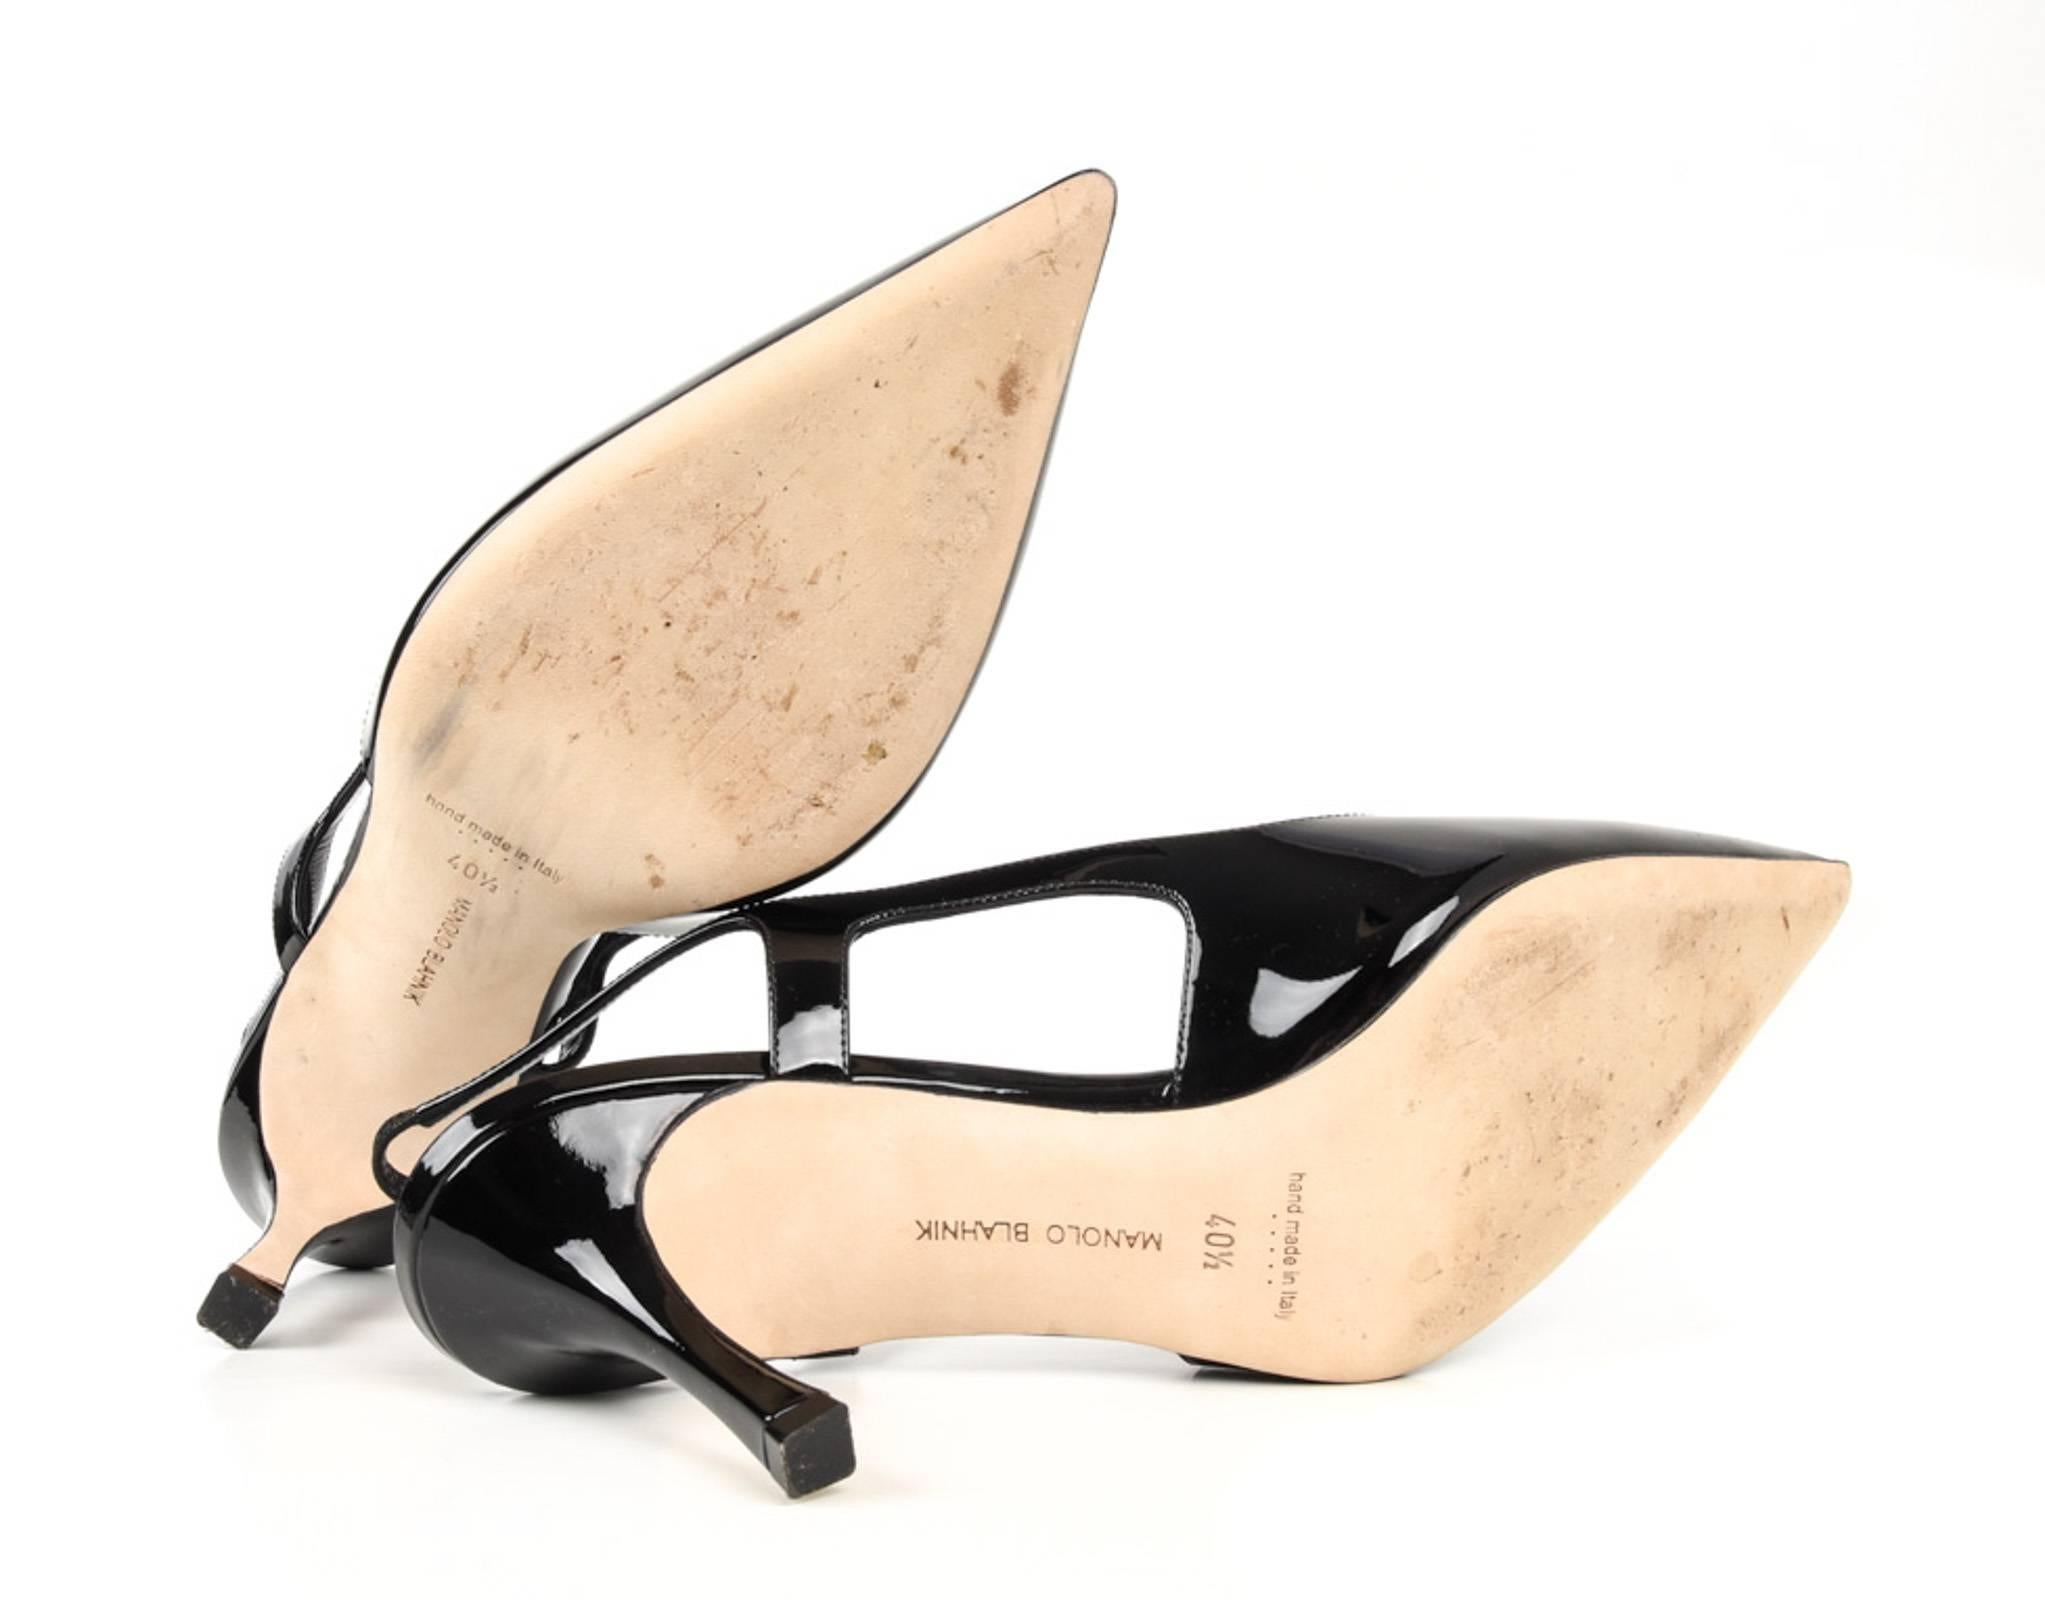 Manolo Blahnik Shoe Black Patent Slingback 40.5 / 10.5 2